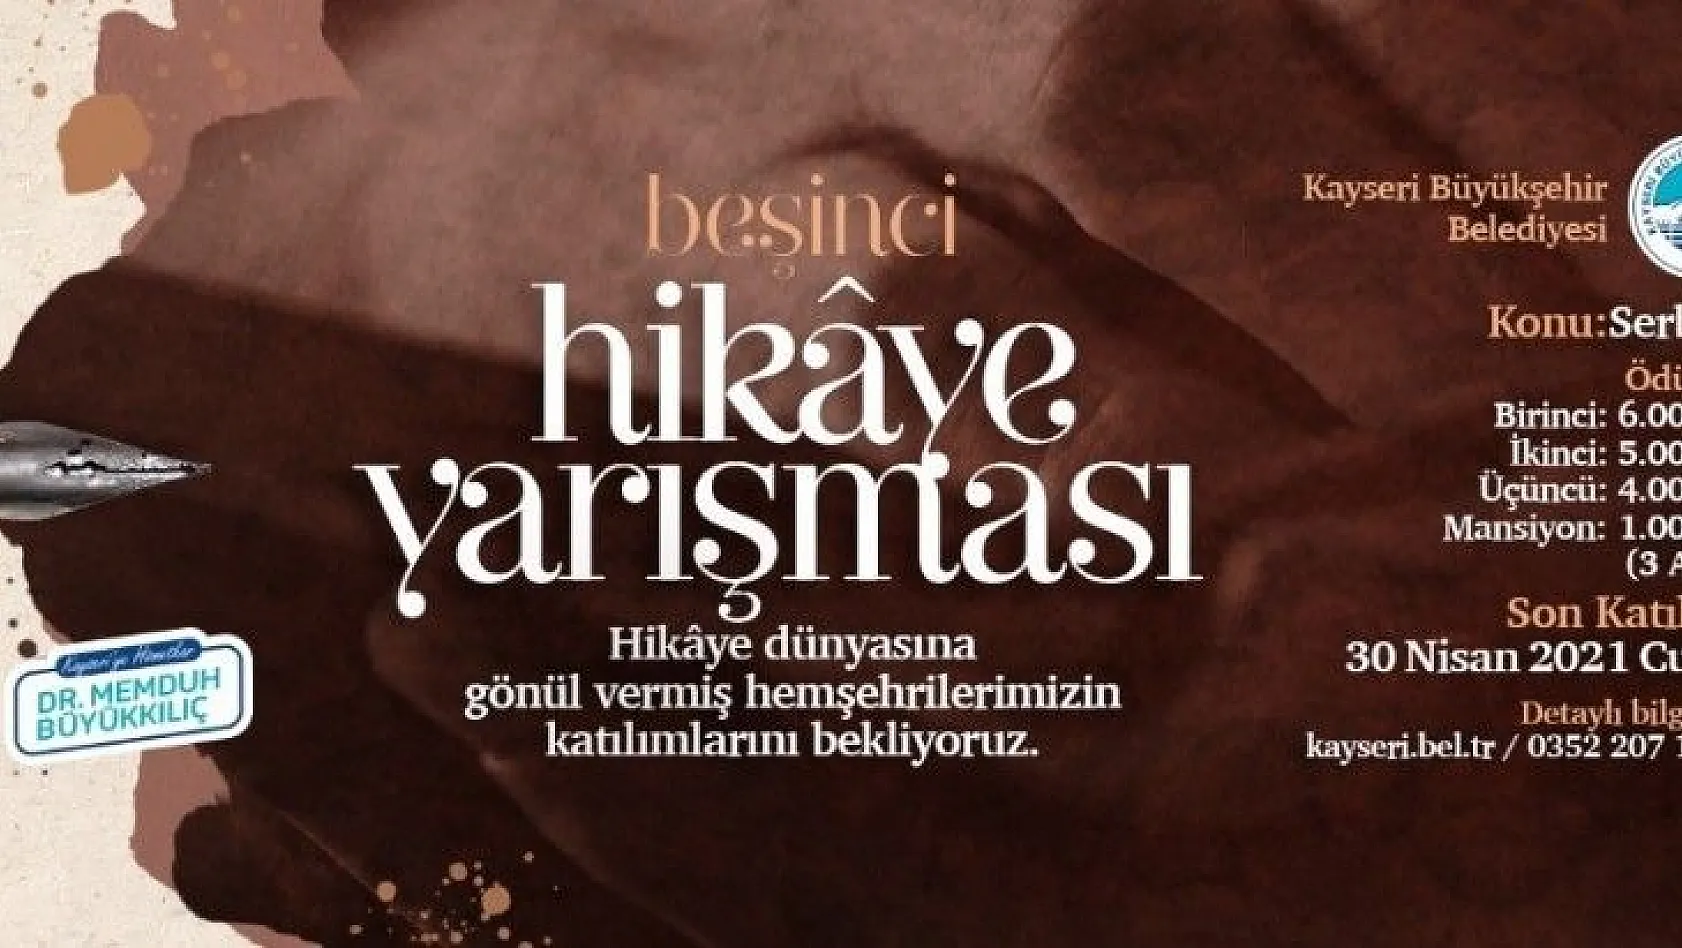 Okur-yazar dostu Büyükşehir'den 5. hikâye yarışması